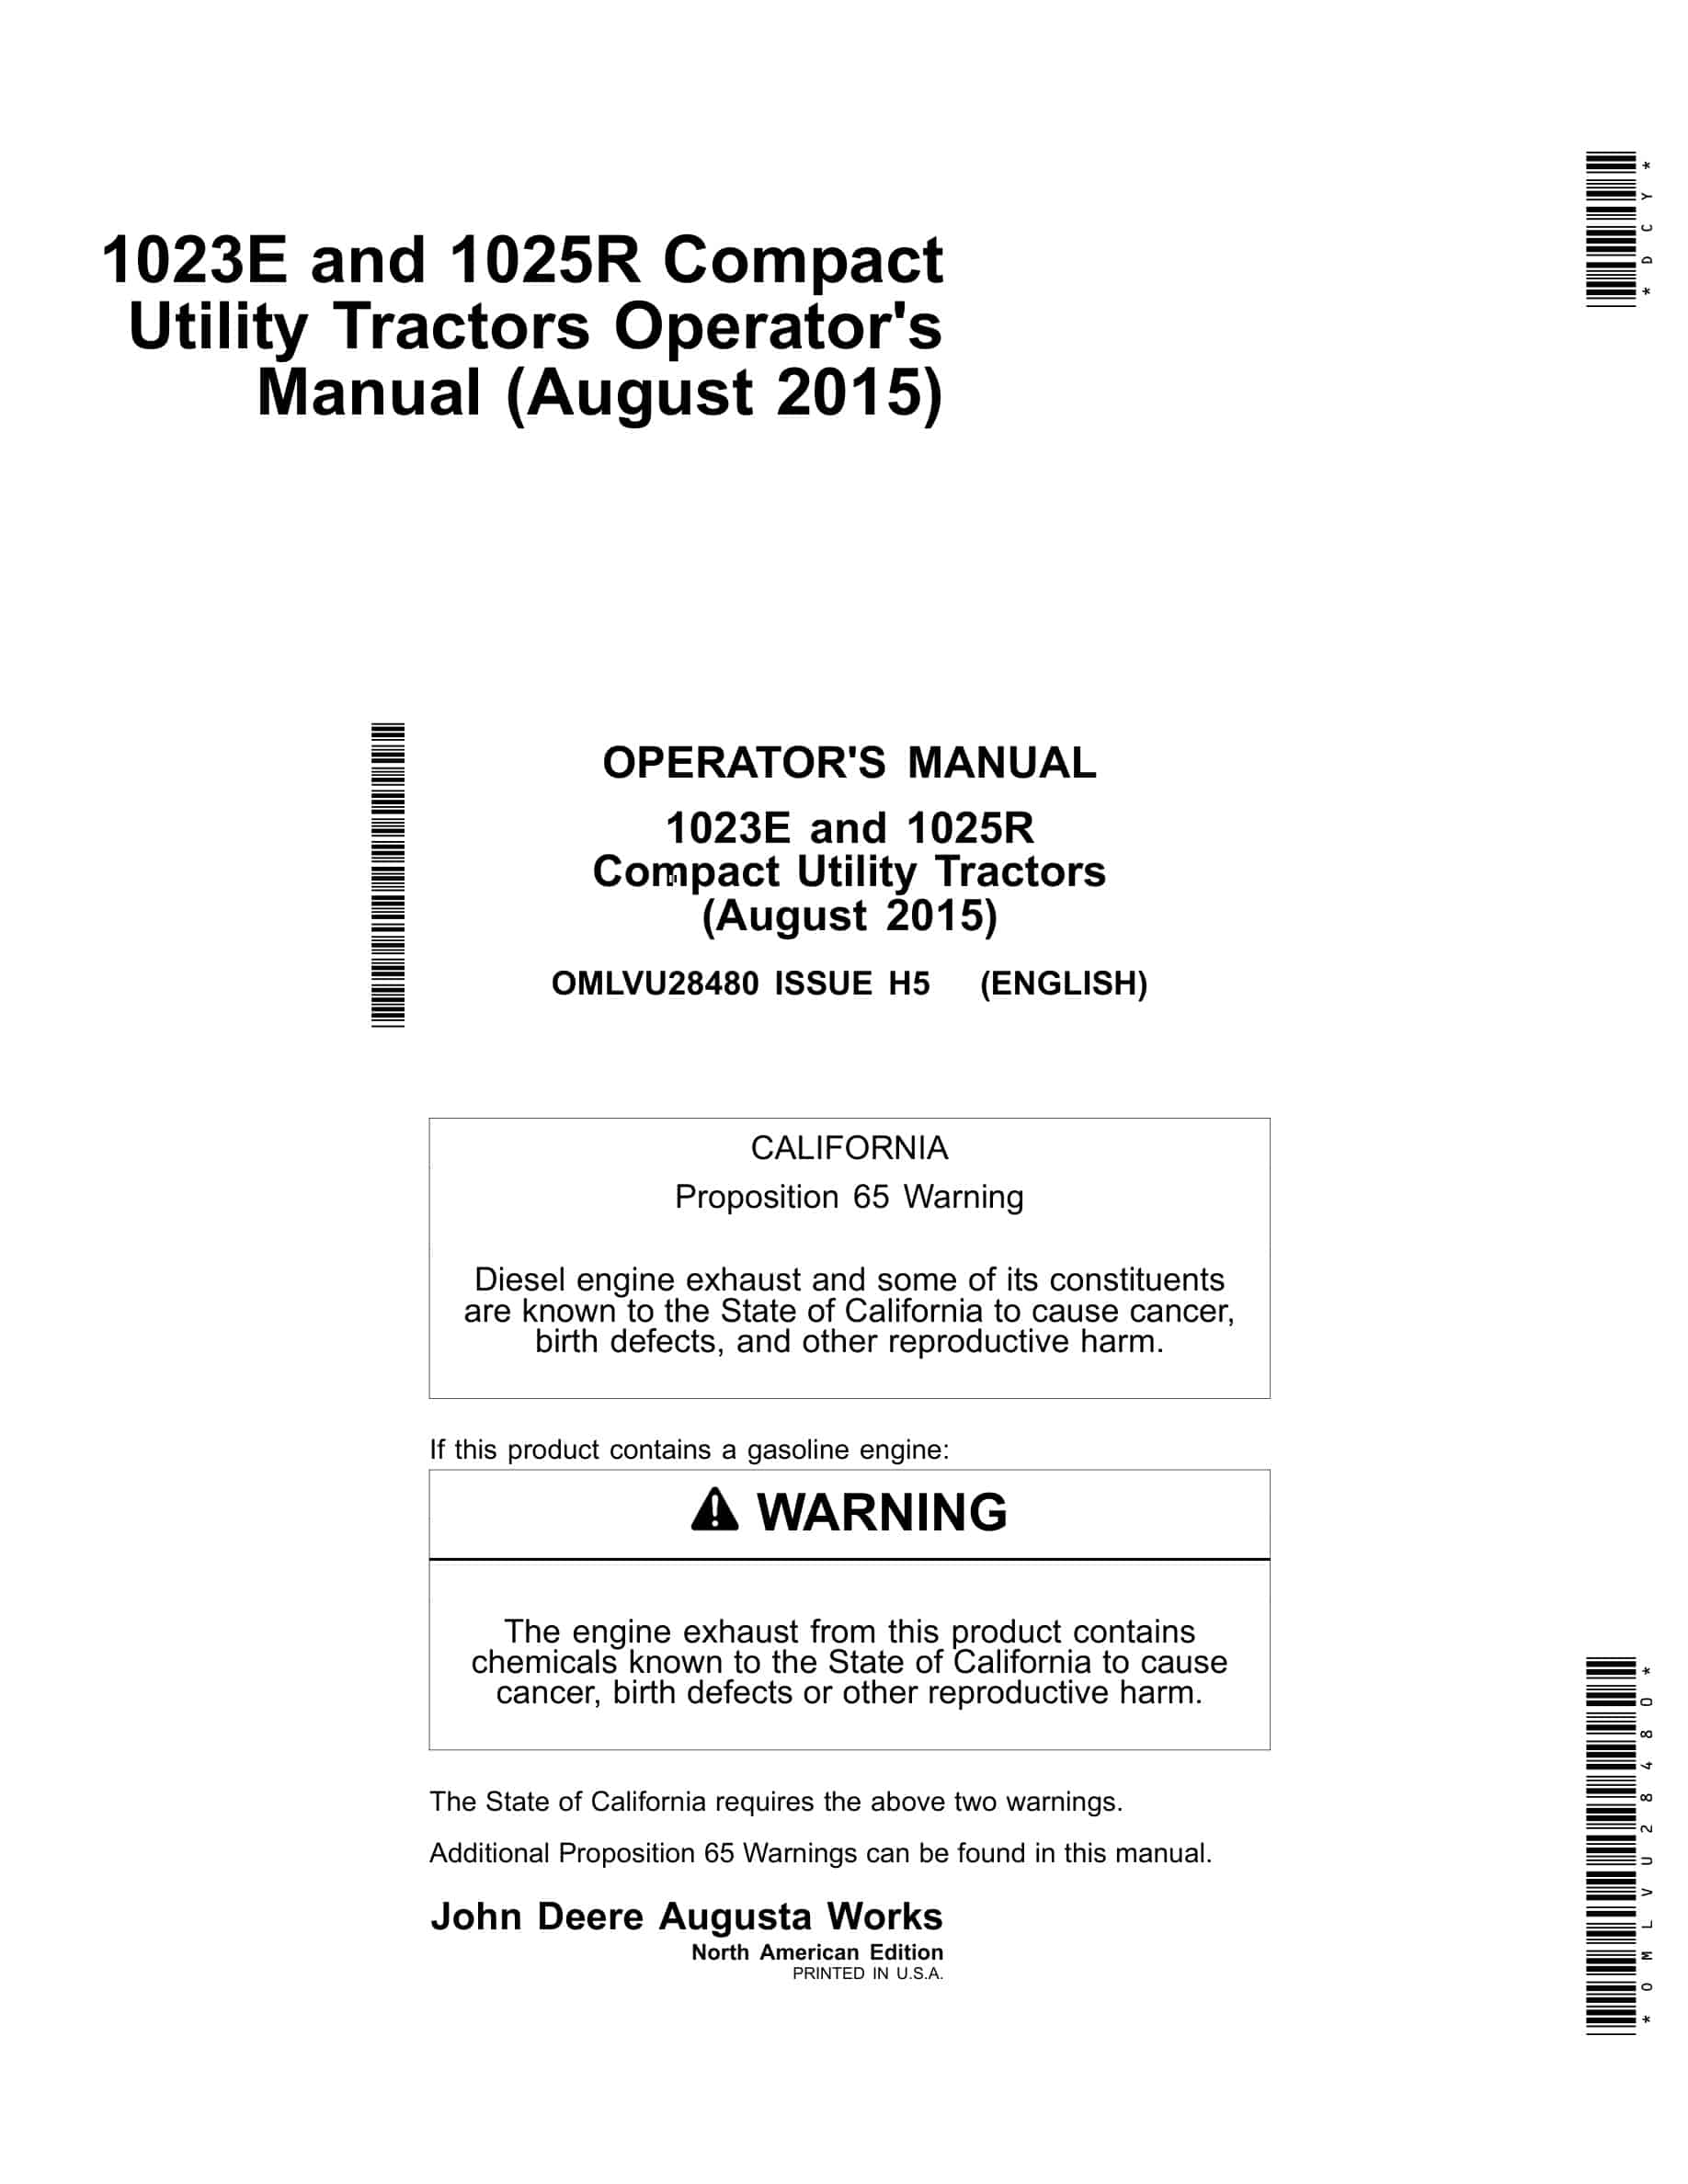 John Deere 1023e And 1025r Compact Utility Tractors Operator Manuals OMLVU28480-1